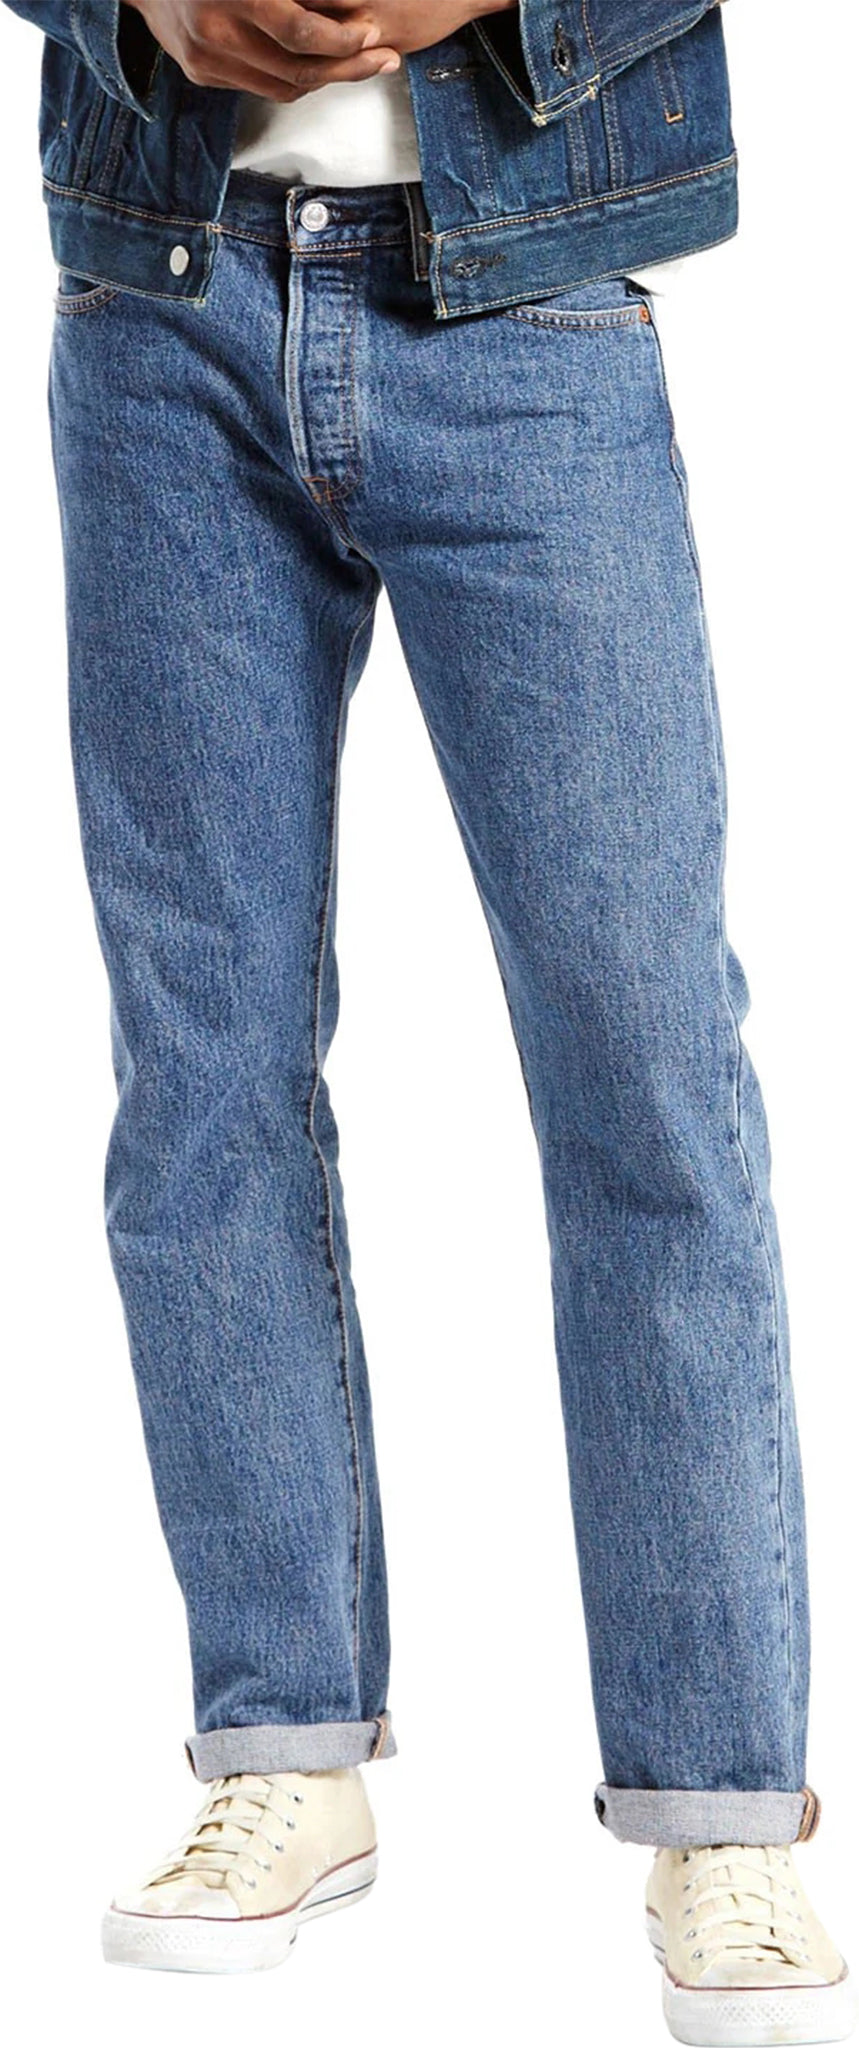 Levi's 501 Original Fit Jeans - Men's | Altitude Sports